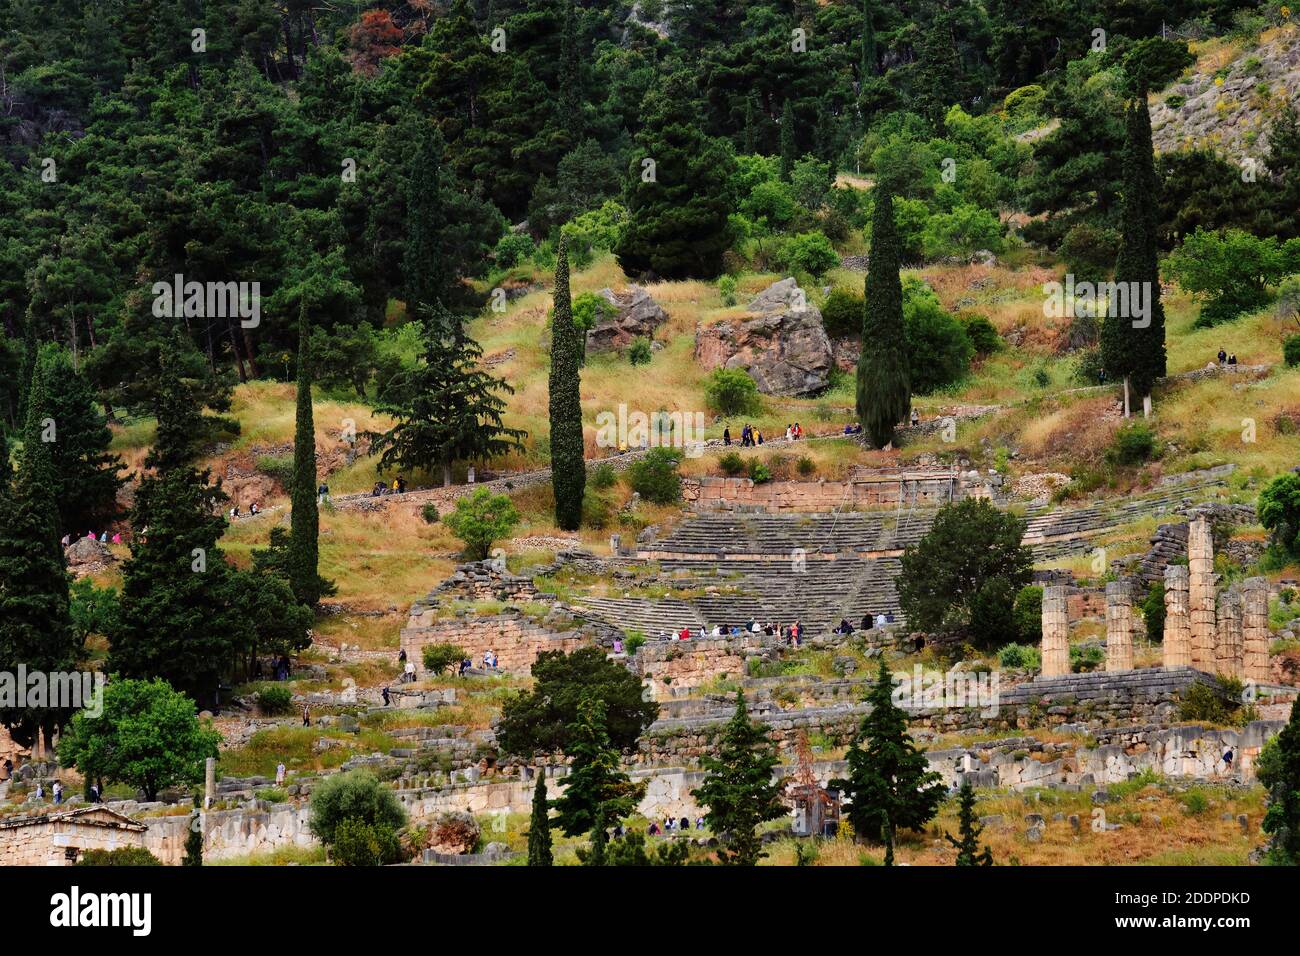 Blick auf den berühmten antiken griechischen Komplex, bekannt als Delphi orakel. Ruinen des Tempels von Apollo und Theater. Touristen hetzen auf und ab Berg, Kiefern, Zedern Stockfoto